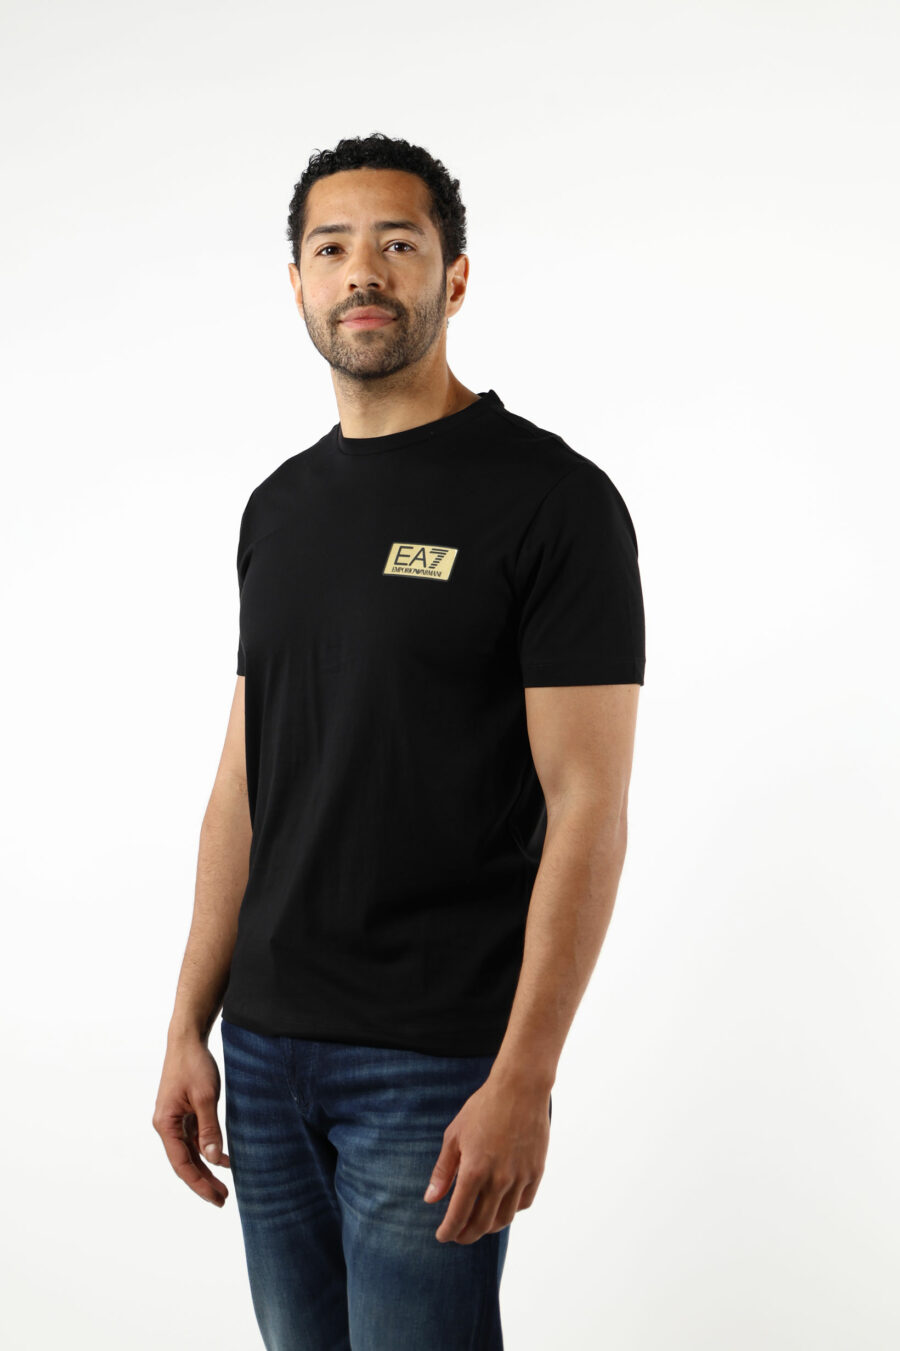 T-shirt noir avec minilogue "lux identity" noir sur plaque d'or - 110813